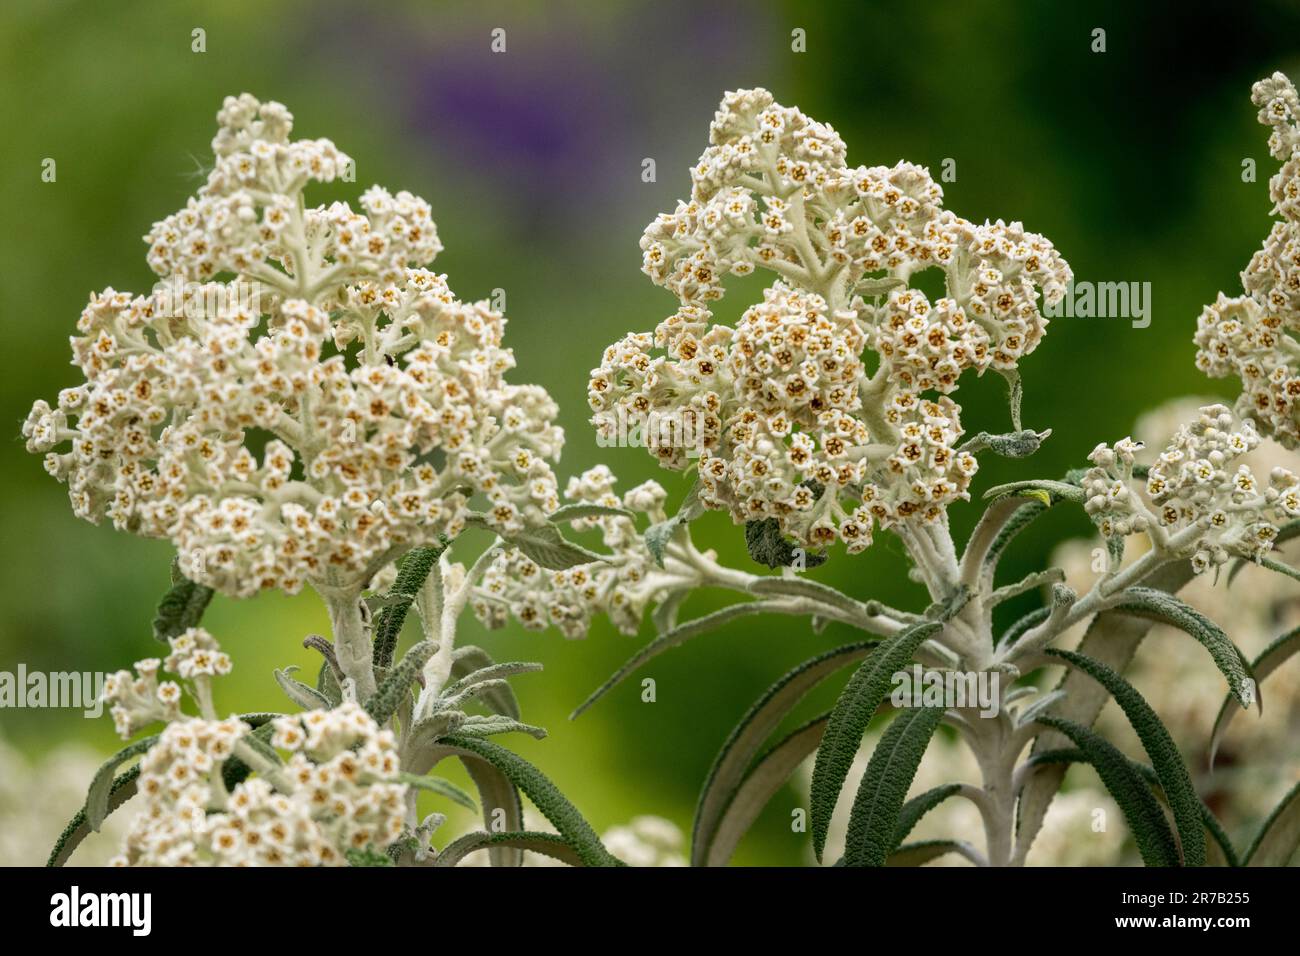 Buddleia loricata, Flowering, Shrub Stock Photo